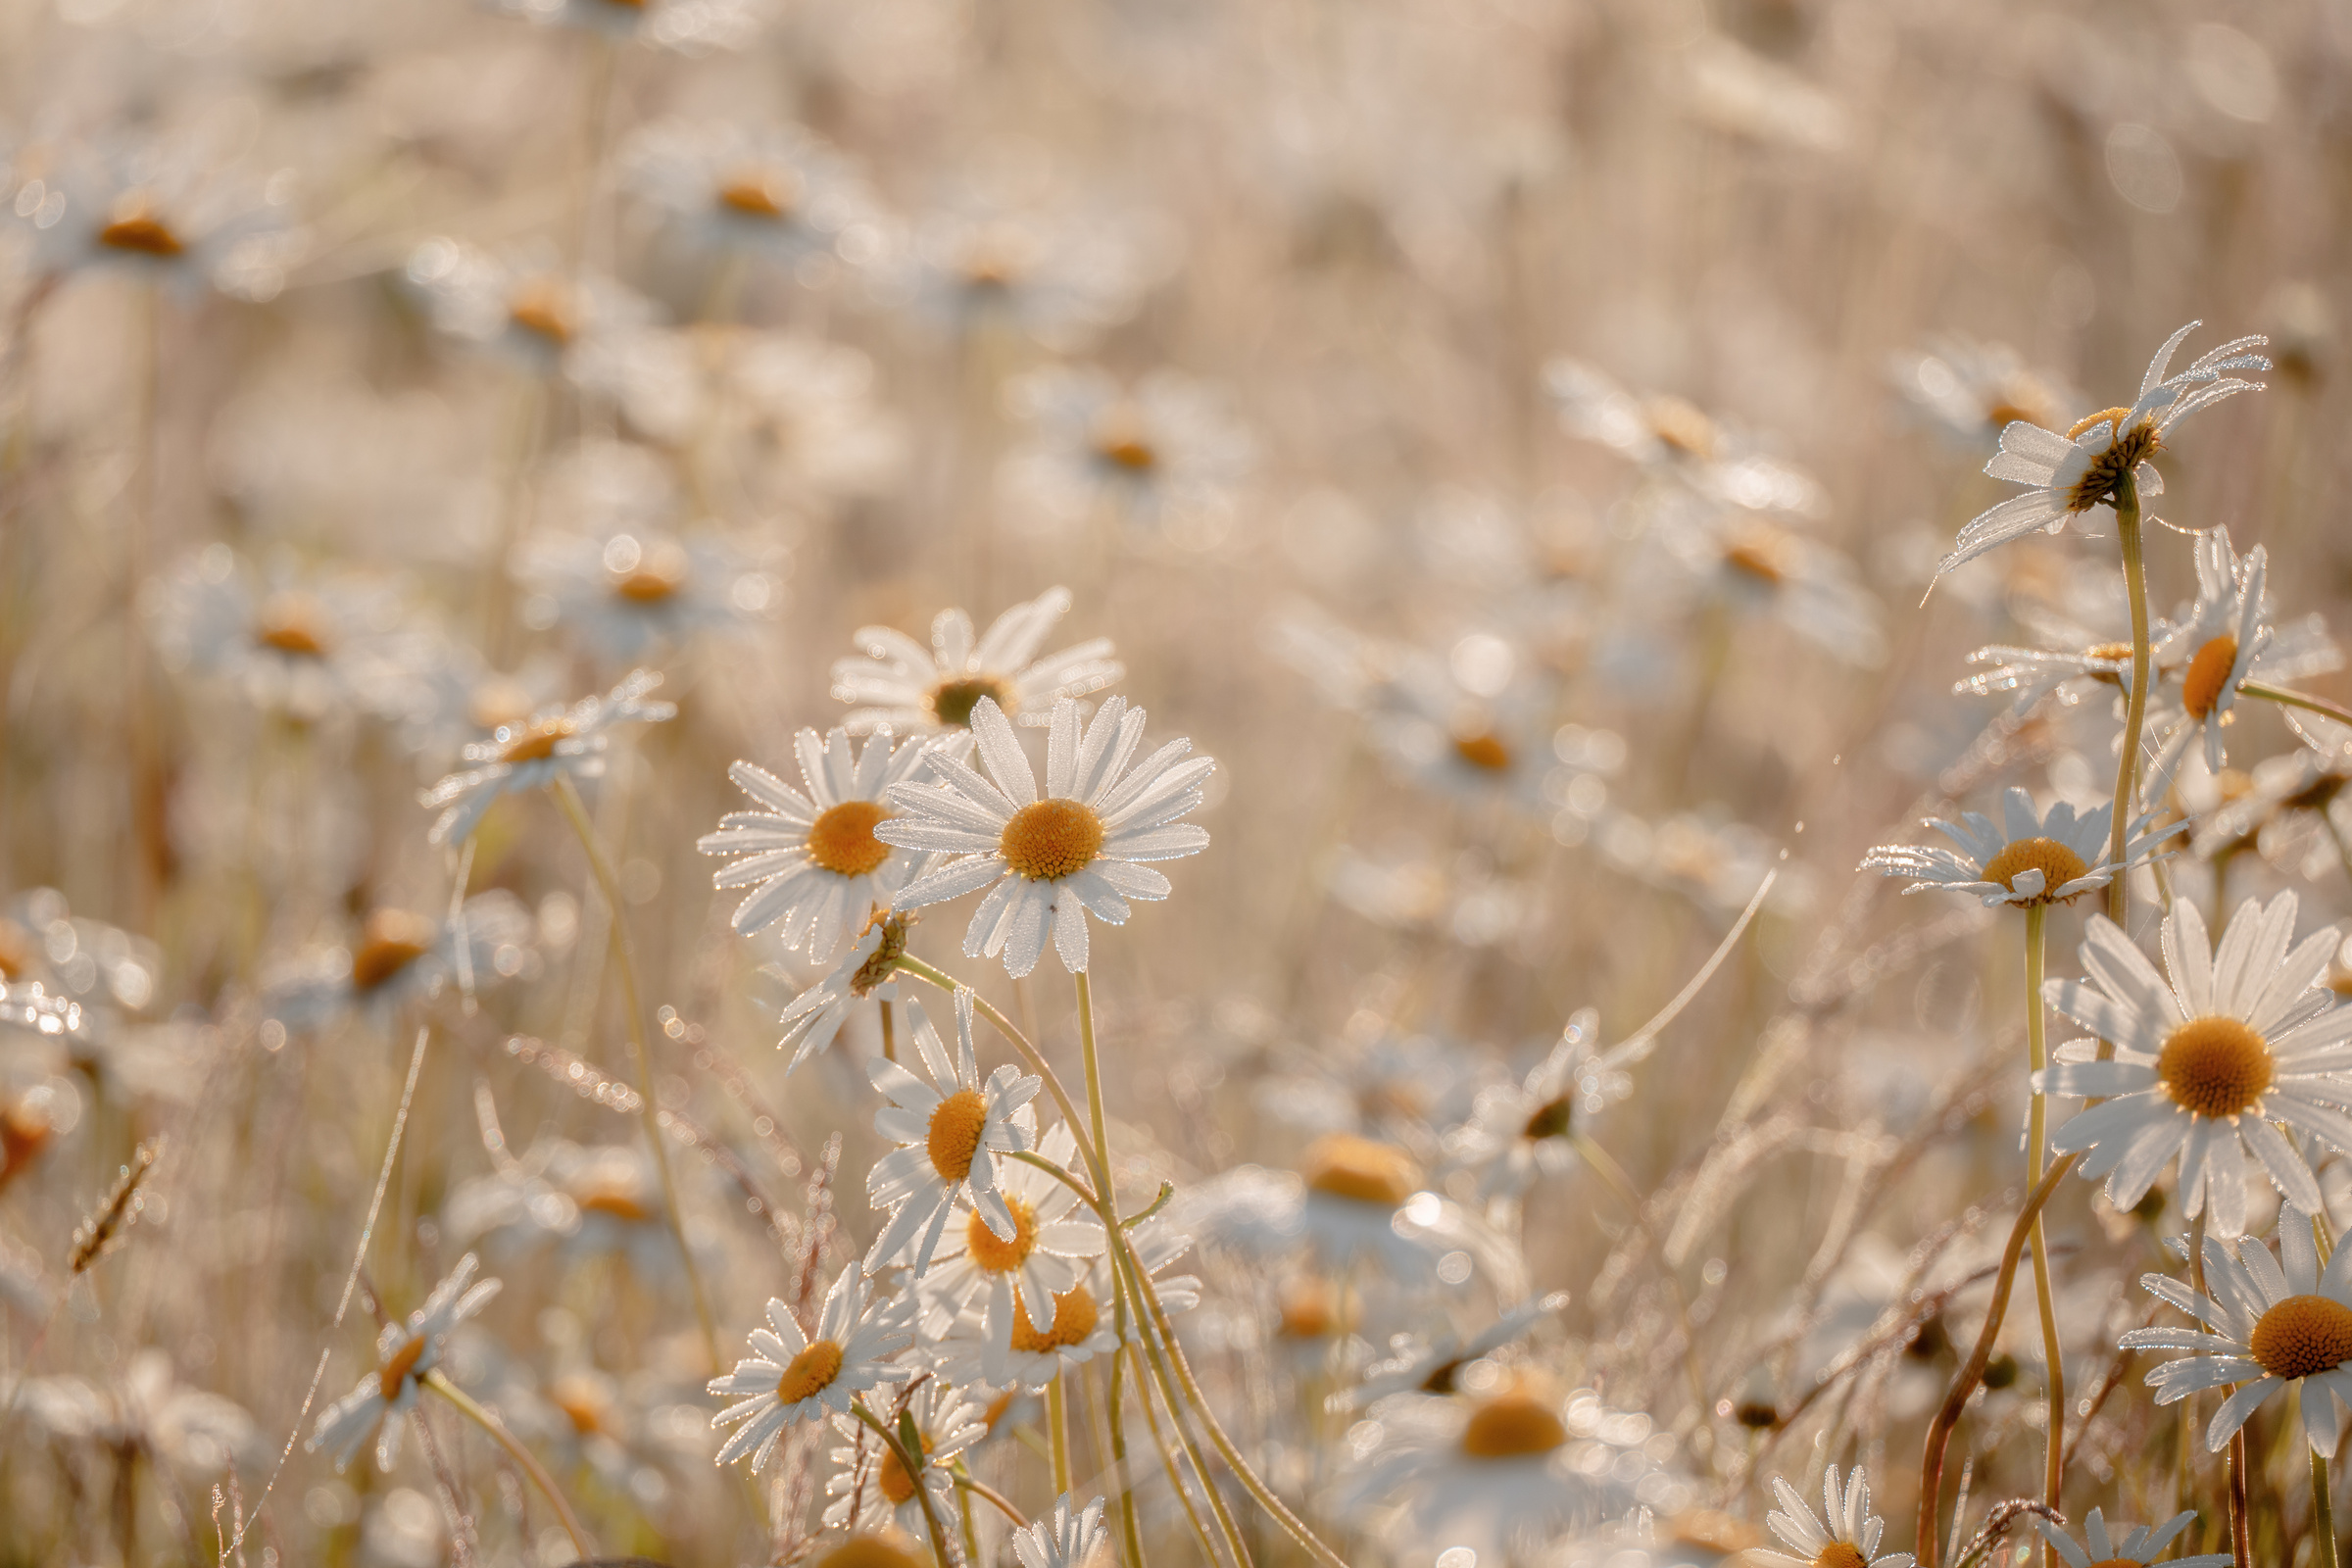 Daisy meadow in sunrise, beige aesthetic background